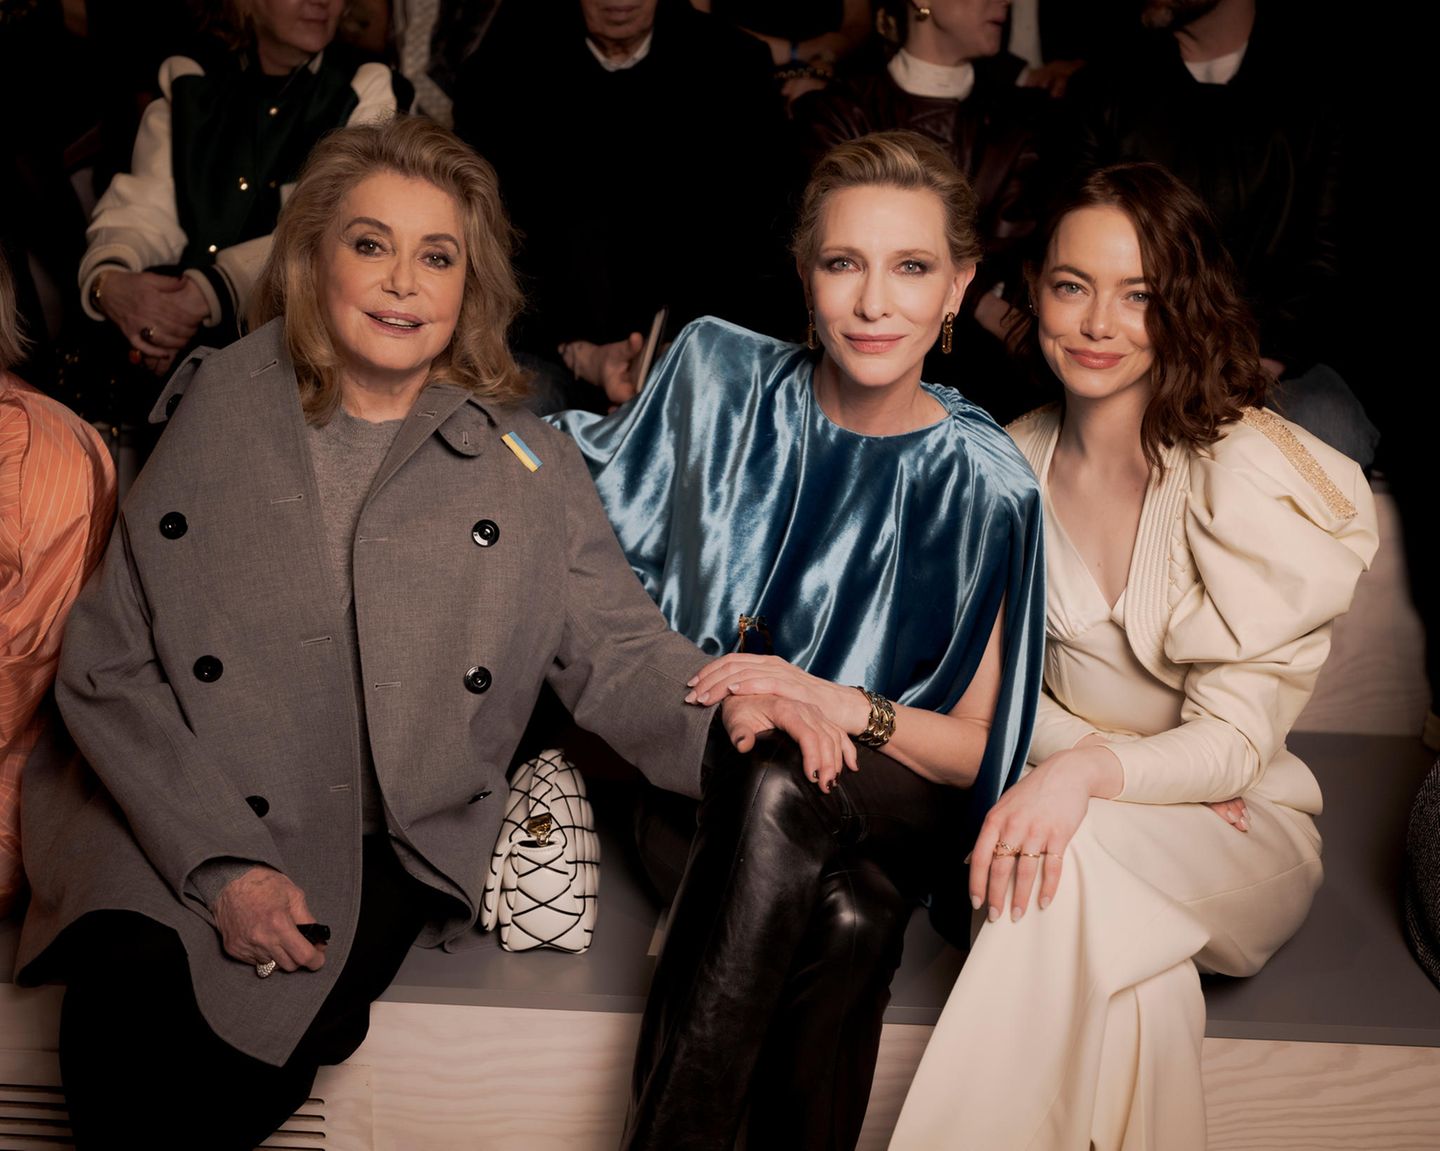 Auch Catherine Deneuve nimmt neben Cate Blanchett und Emma Stone ihren Platz ein. So ganz angekommen ist sie im grauen Mantel mit zweireihiger Knopfleiste noch nicht. Der offene Mantel offenbart jedoch auch etwas von ihrem lässigen Look: Strickpullover und schwarze Hose, mehr braucht es nicht. 